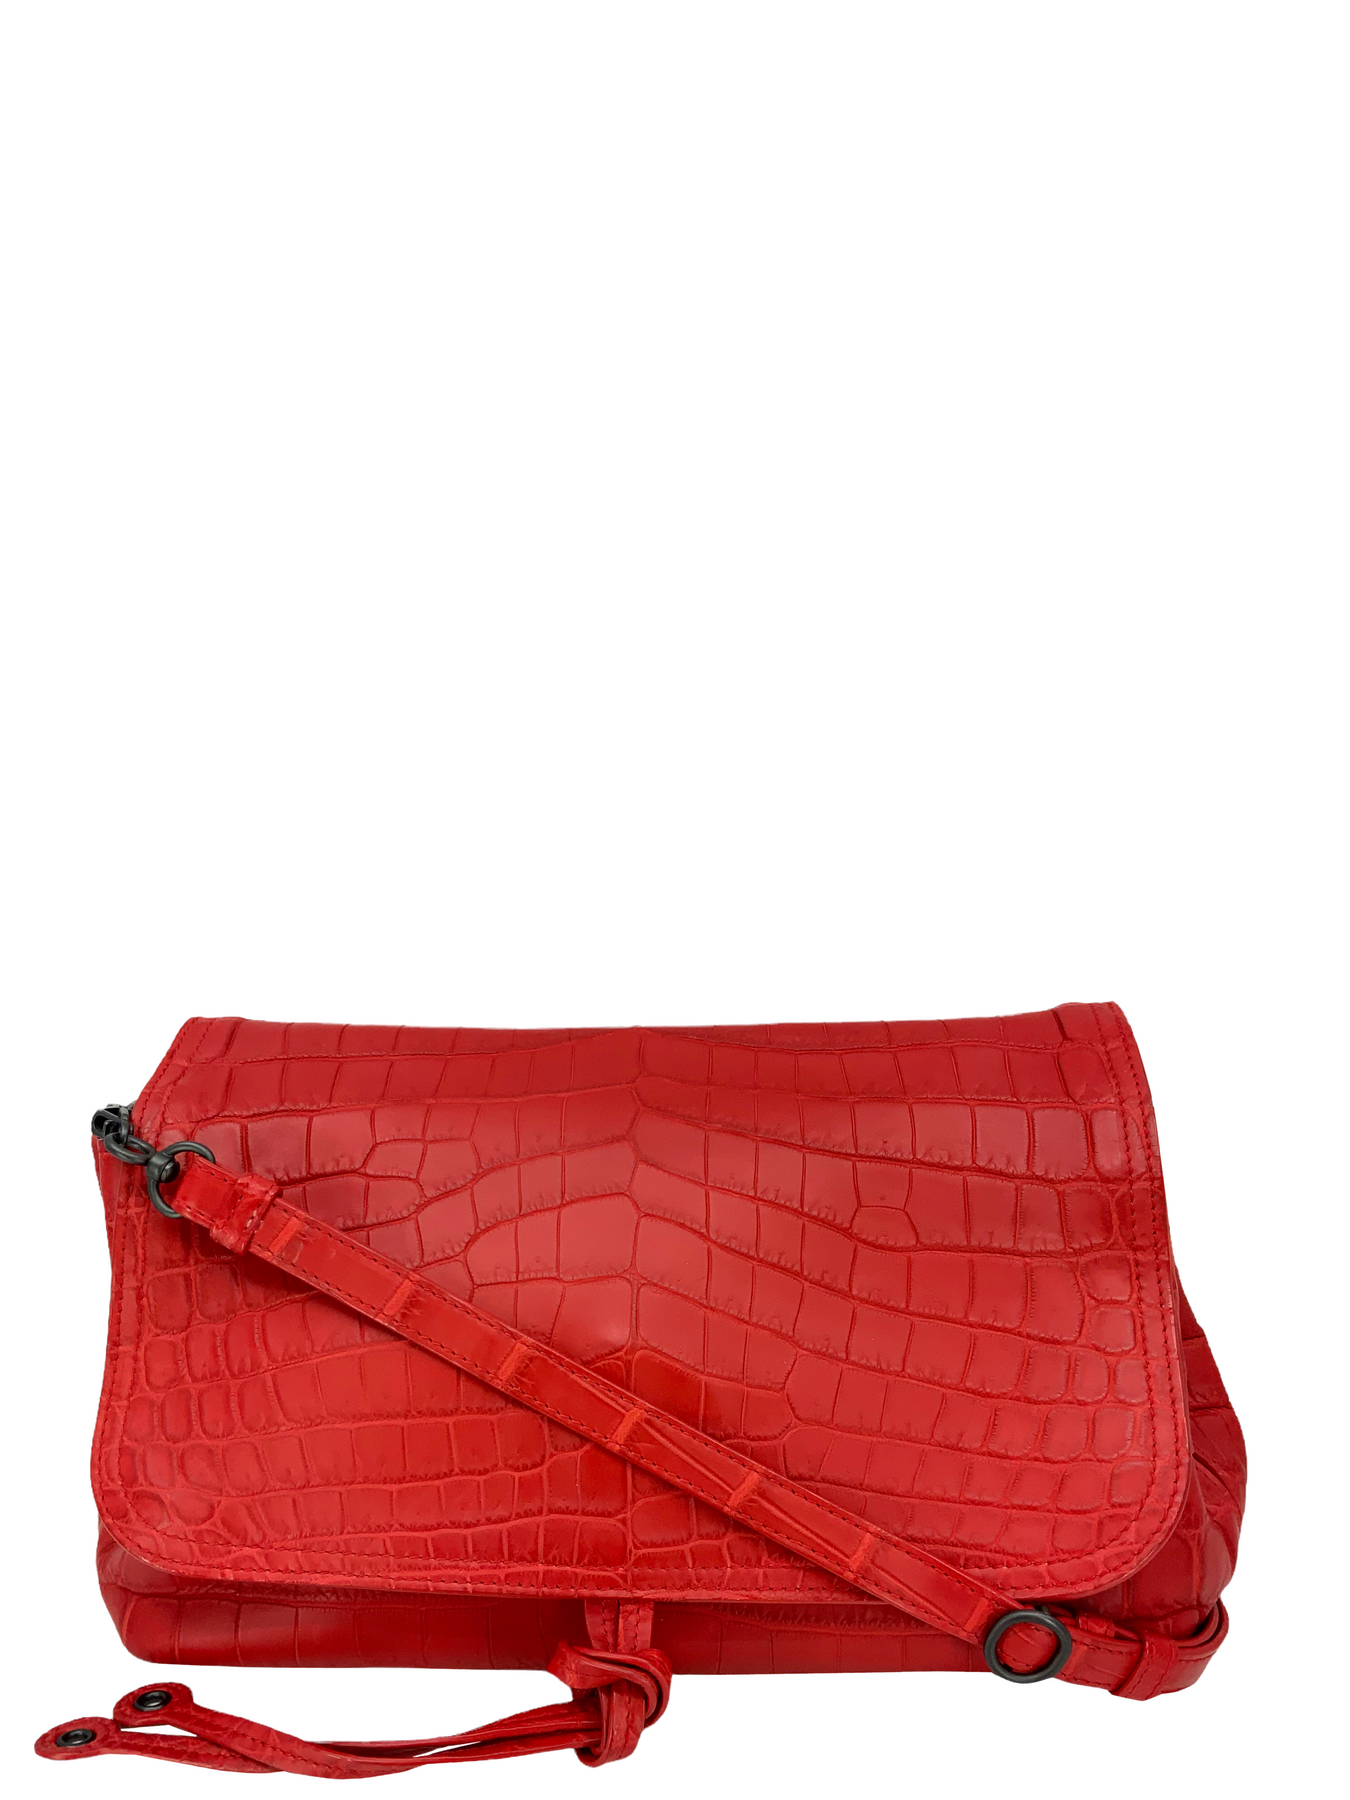 Designer Alligator Leather Large Wallet With Strap Wristlet Clutch